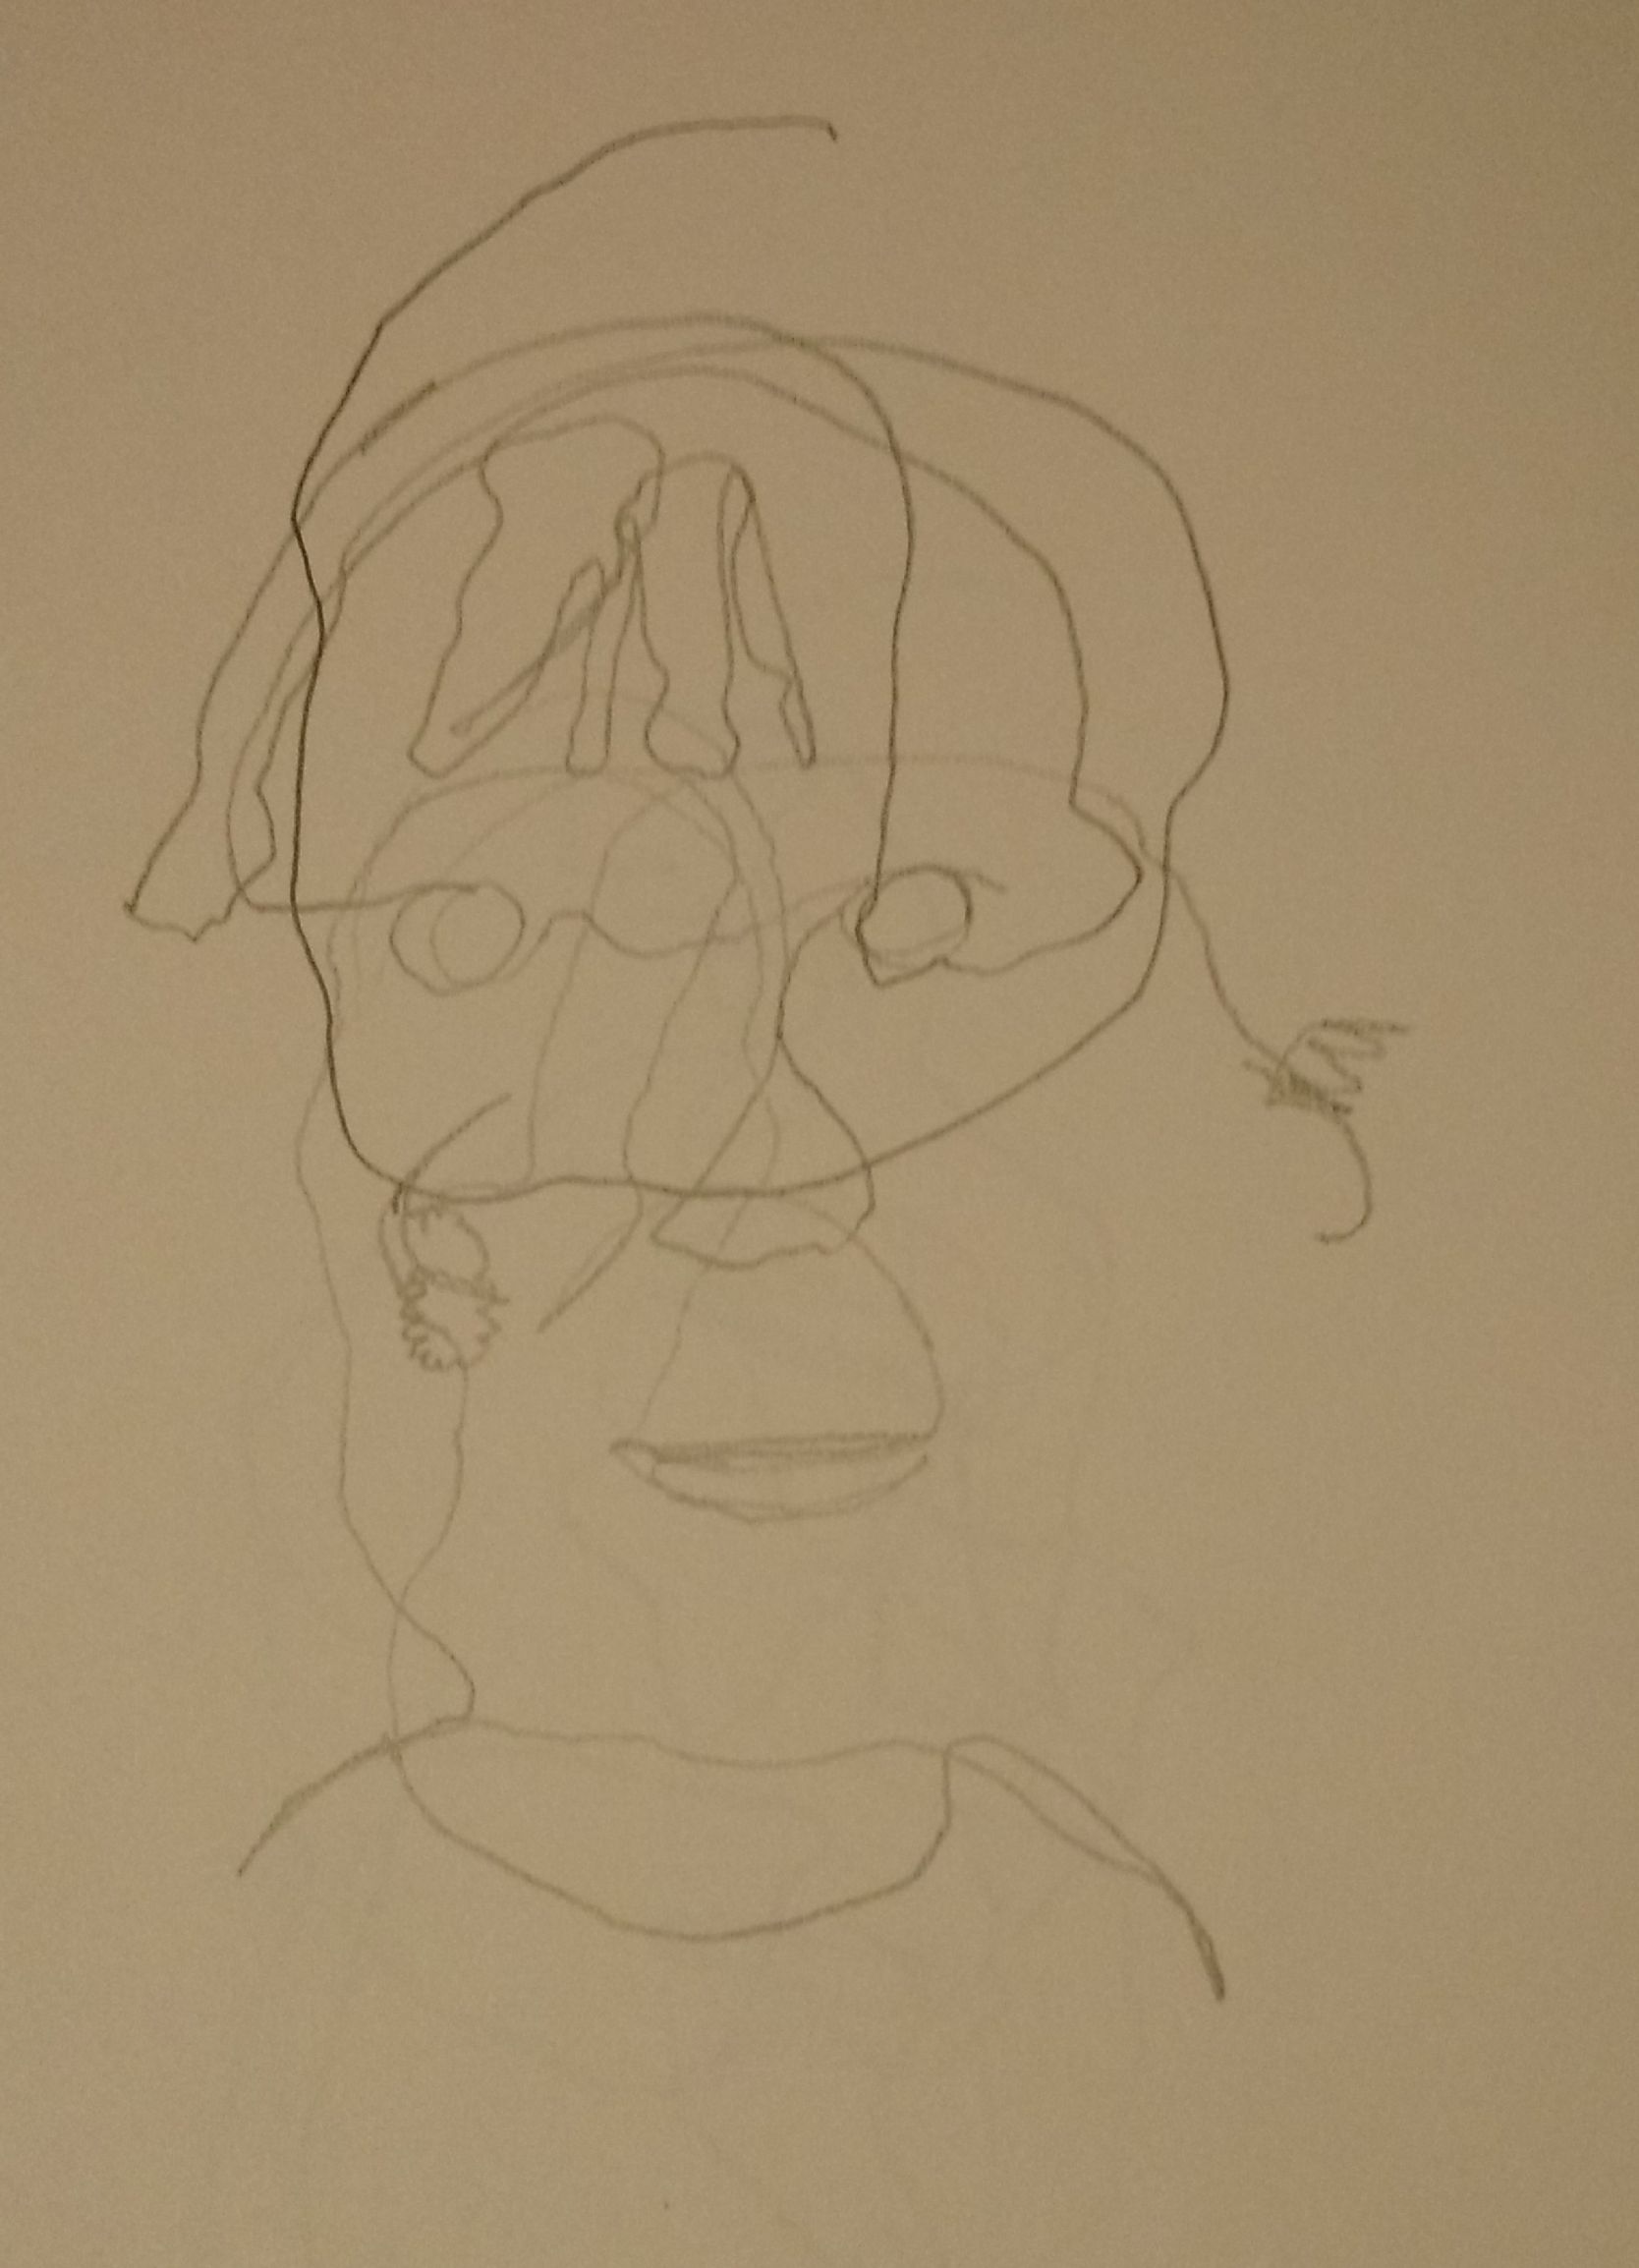 face contour sketch exercise